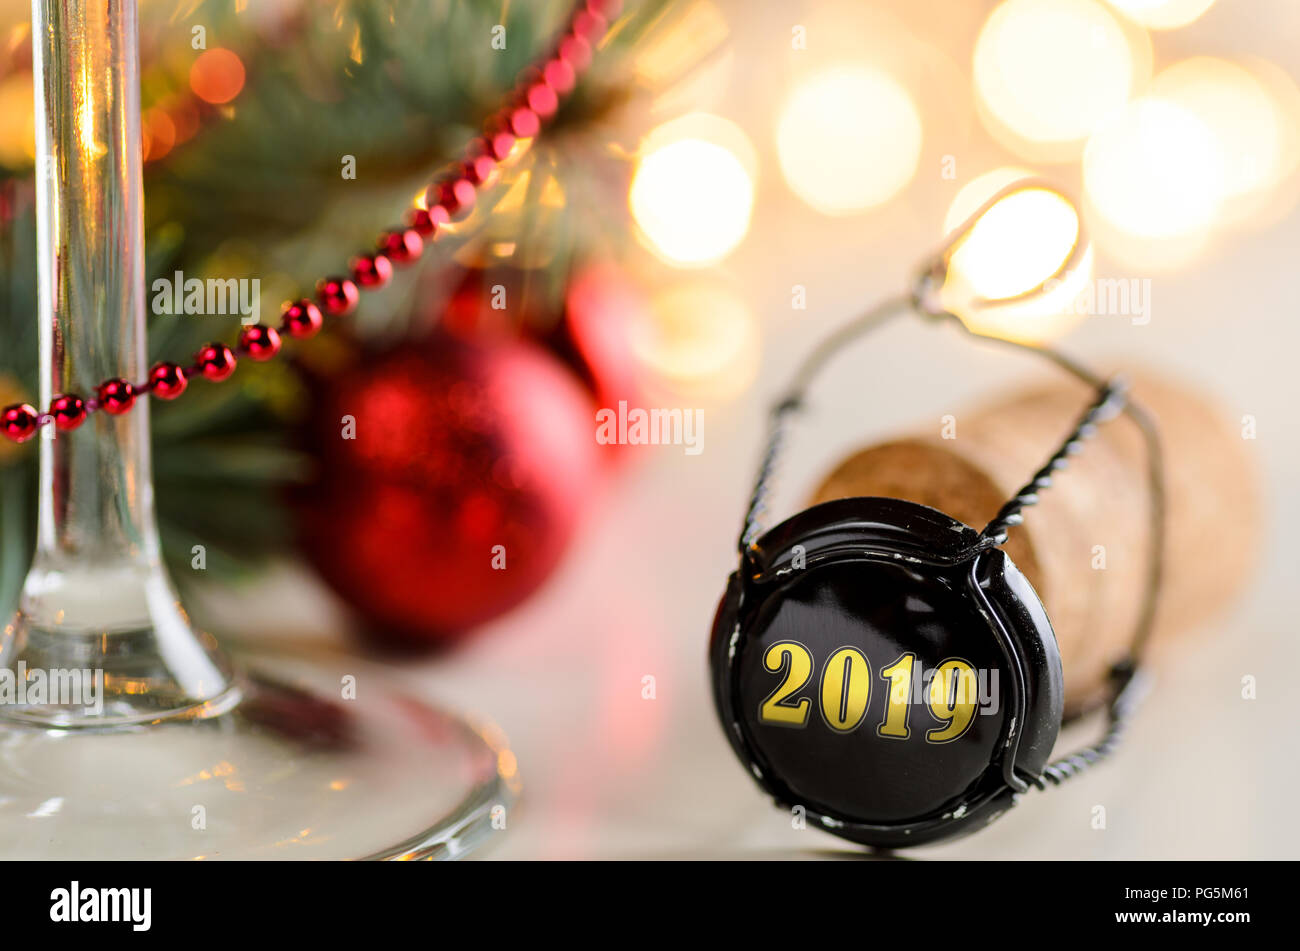 Natale o Capodanno vino spumante cork Foto Stock